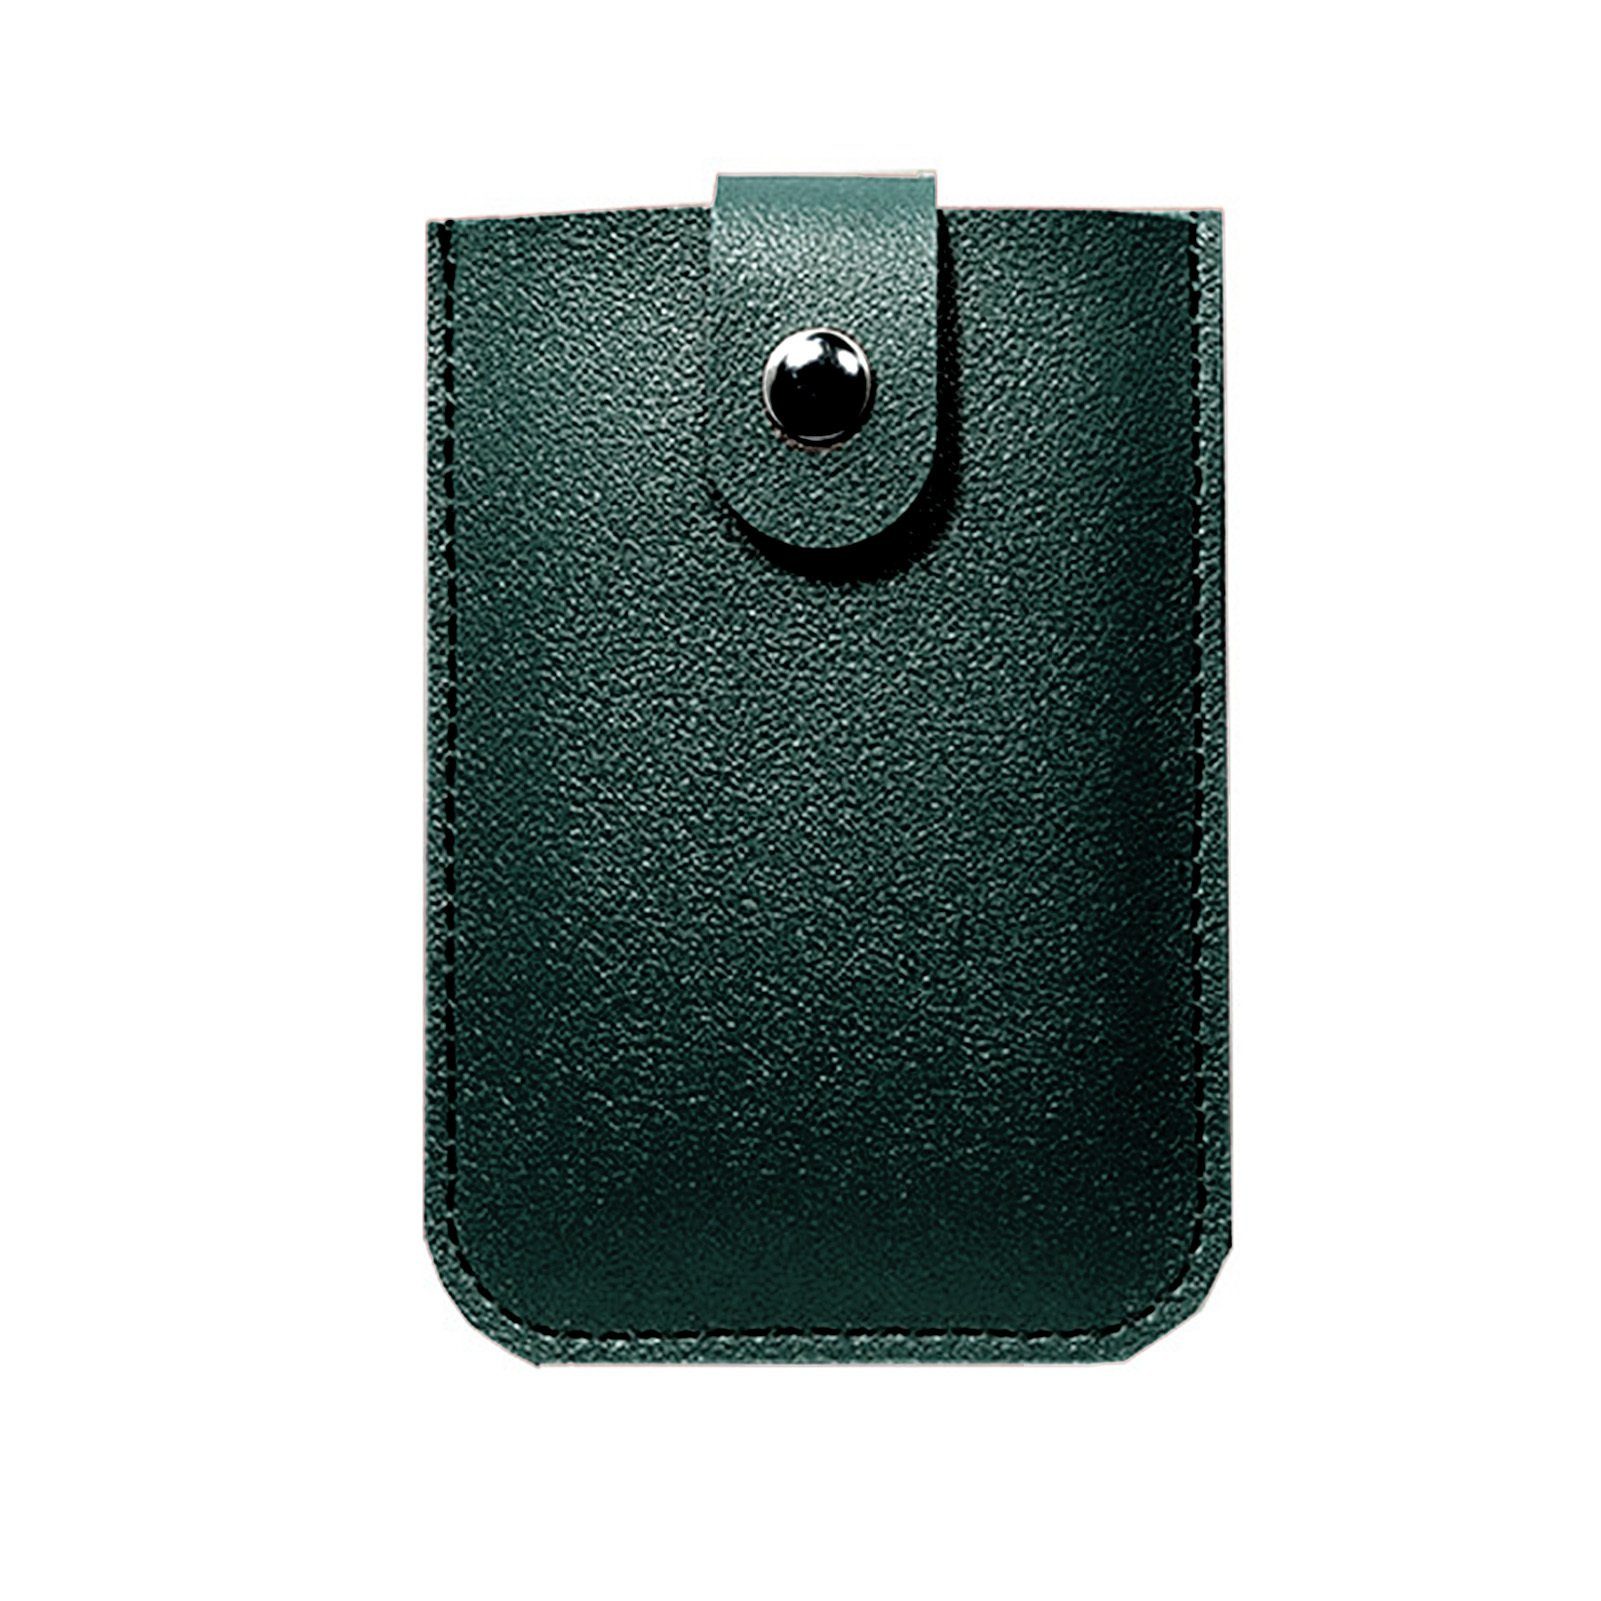 Blusmart Mini Geldbörse Ausziehbarer Kartenhalter Mit 6 Fächern, Tragbares dark green